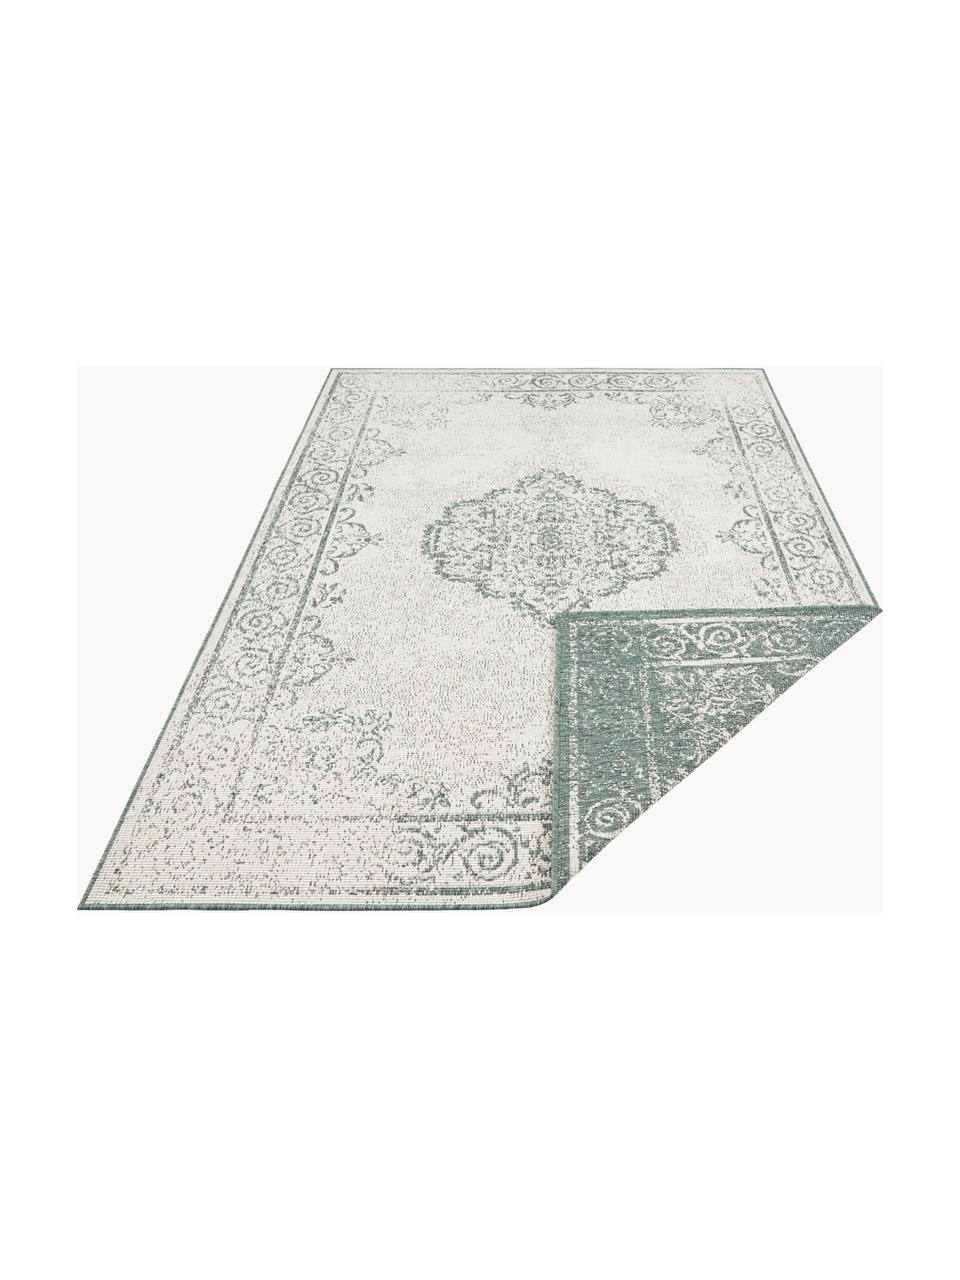 Interiérový/exteriérový oboustranný koberec Cebu, 100 % polypropylen, Šalvějově zelená, tlumeně bílá, Š 160 cm, D 230 cm (velikost M)